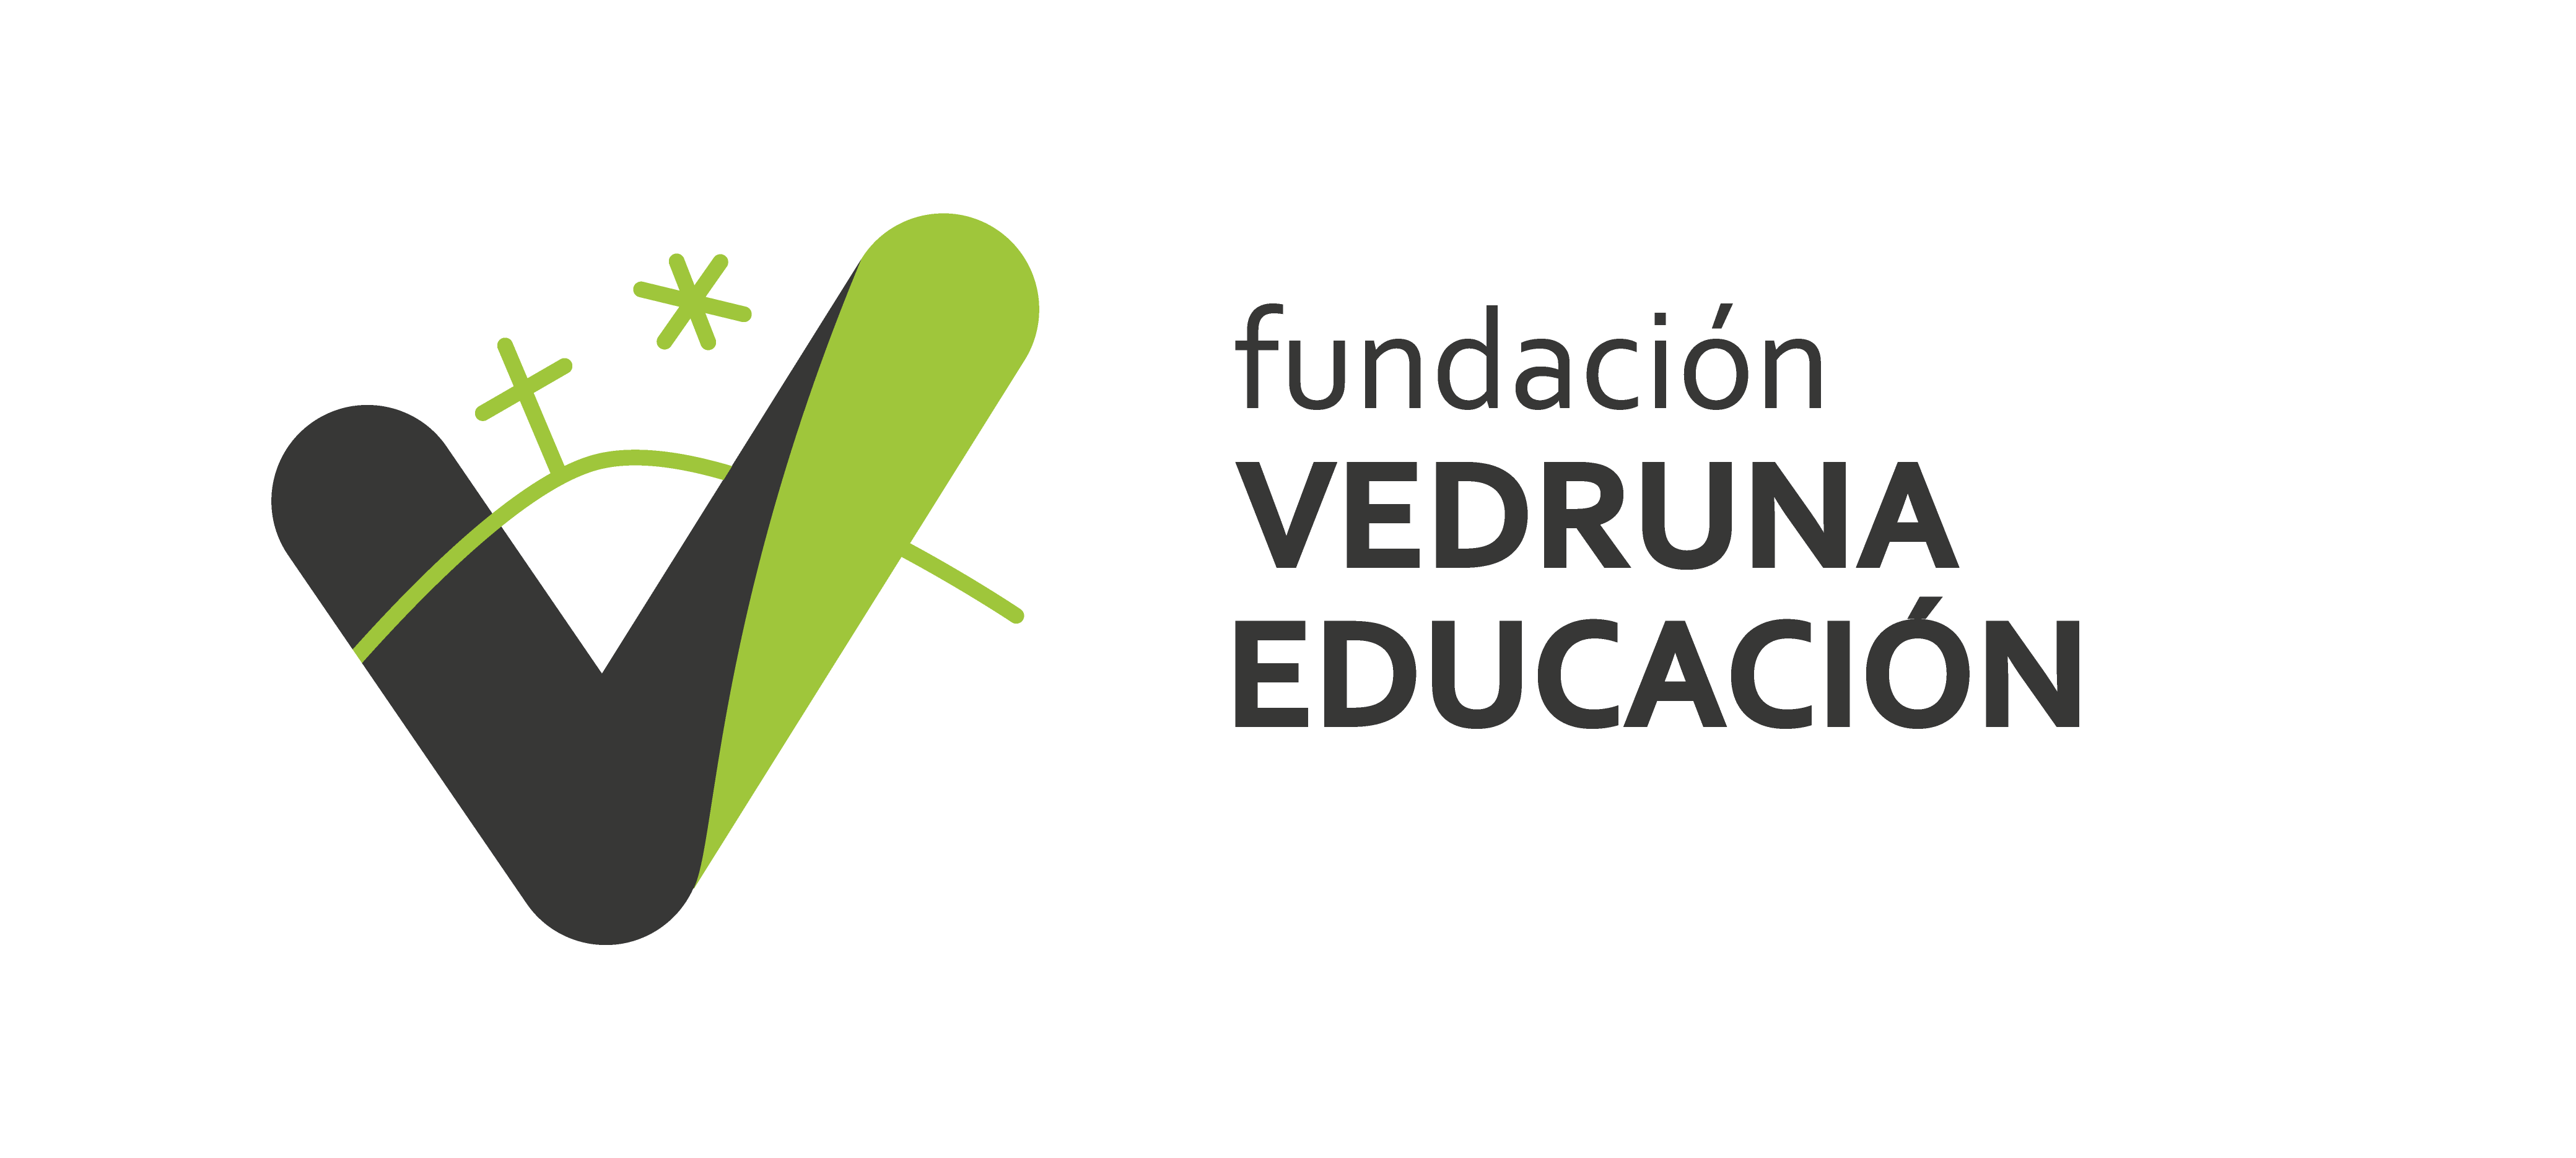 Fundación Vedruna Educación